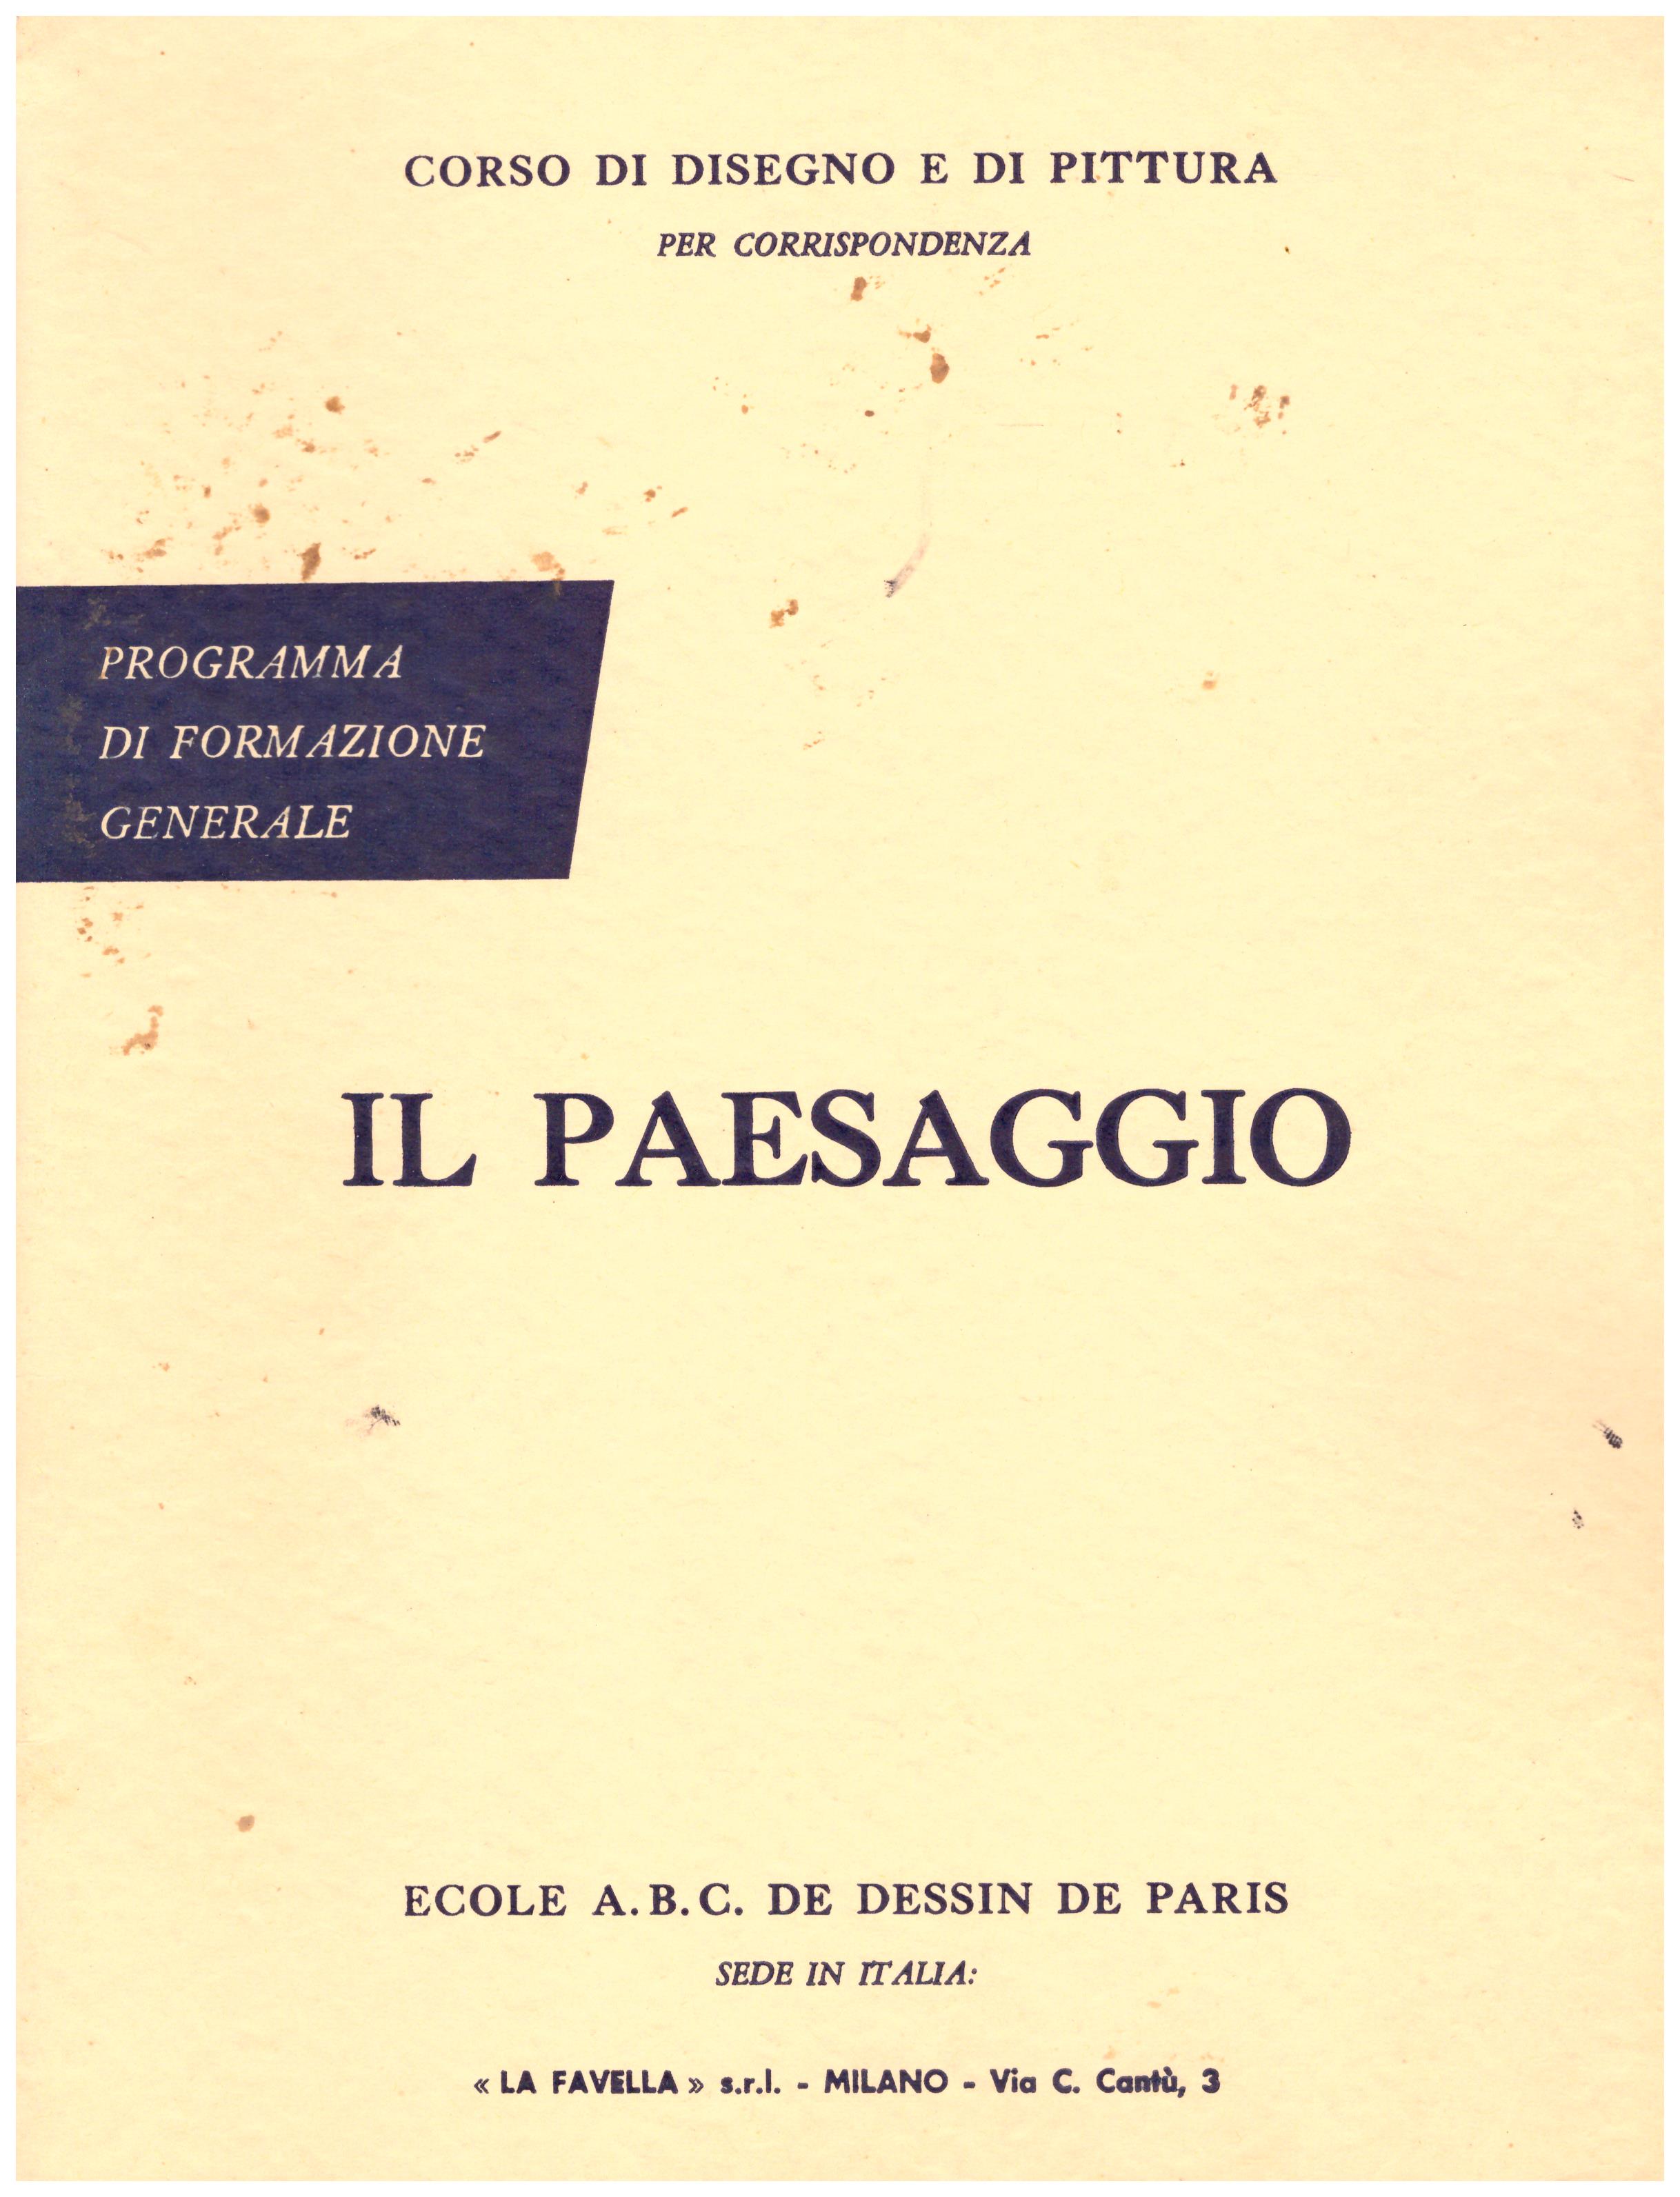 Titolo: Corso di disegno e pittura, il paesaggio Autore: AA.VV.  Editore: Ecole A.B.C. de dessin de Paris sede in Italia: La Favella, Milano 1962